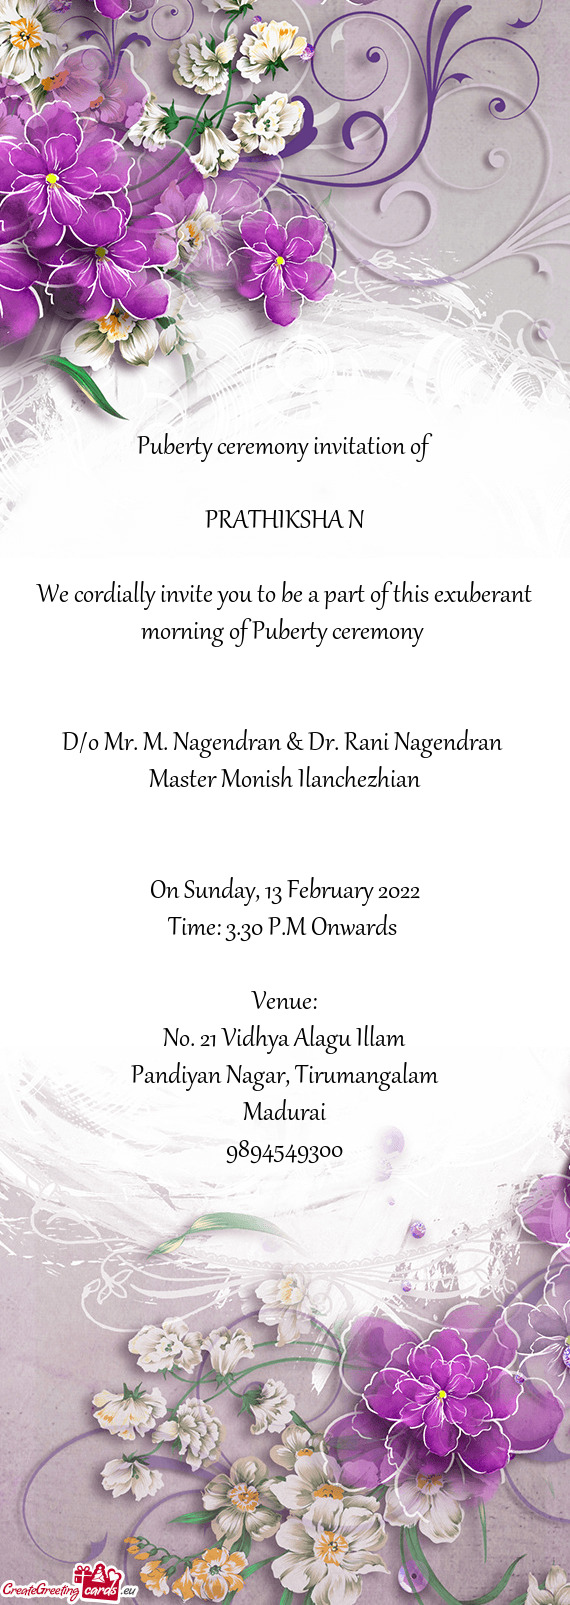 D/o Mr. M. Nagendran & Dr. Rani Nagendran